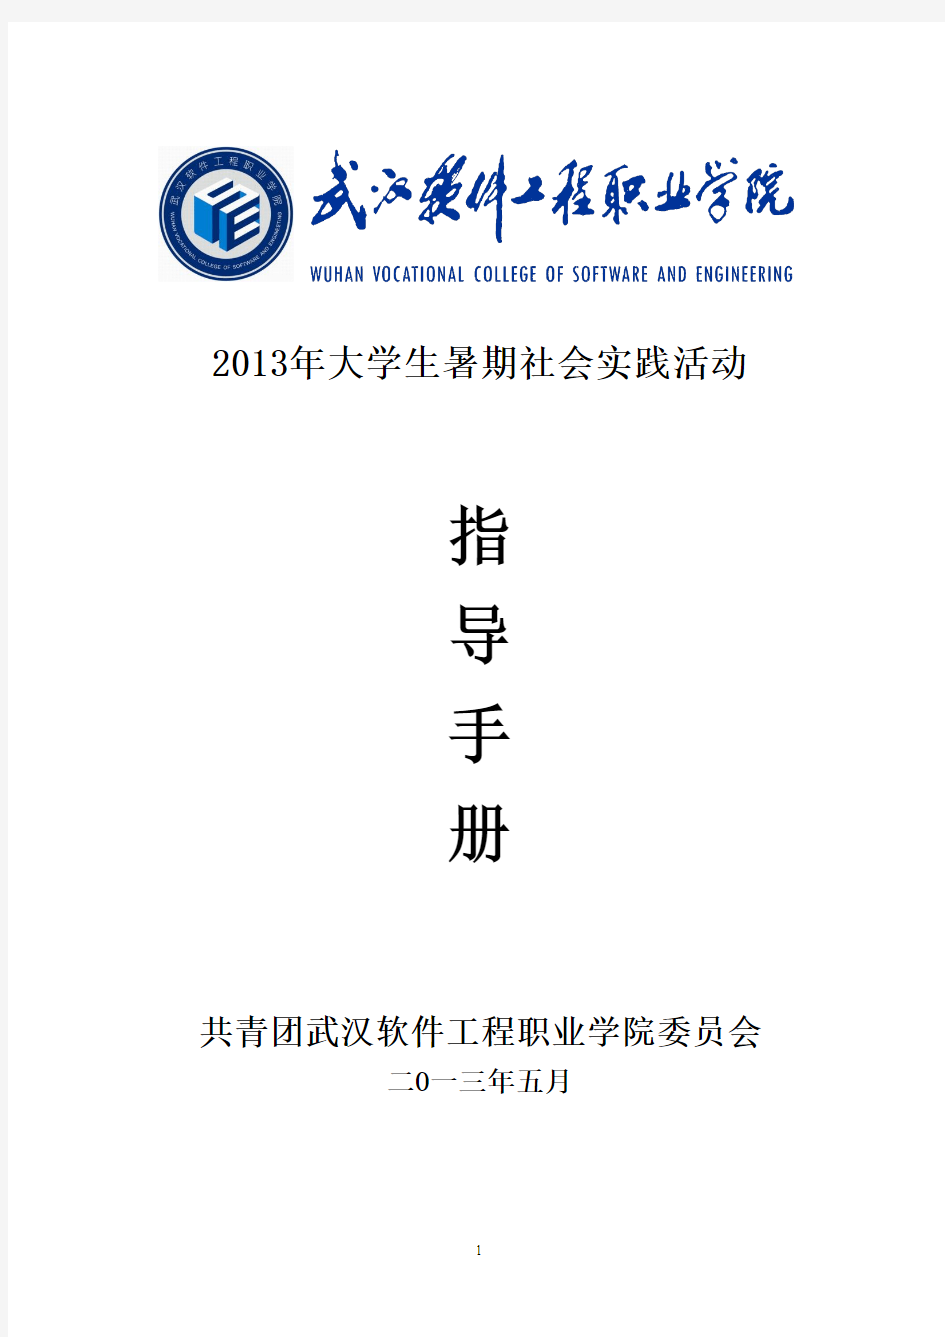 2013年暑期社会实践指导手册(5.29)